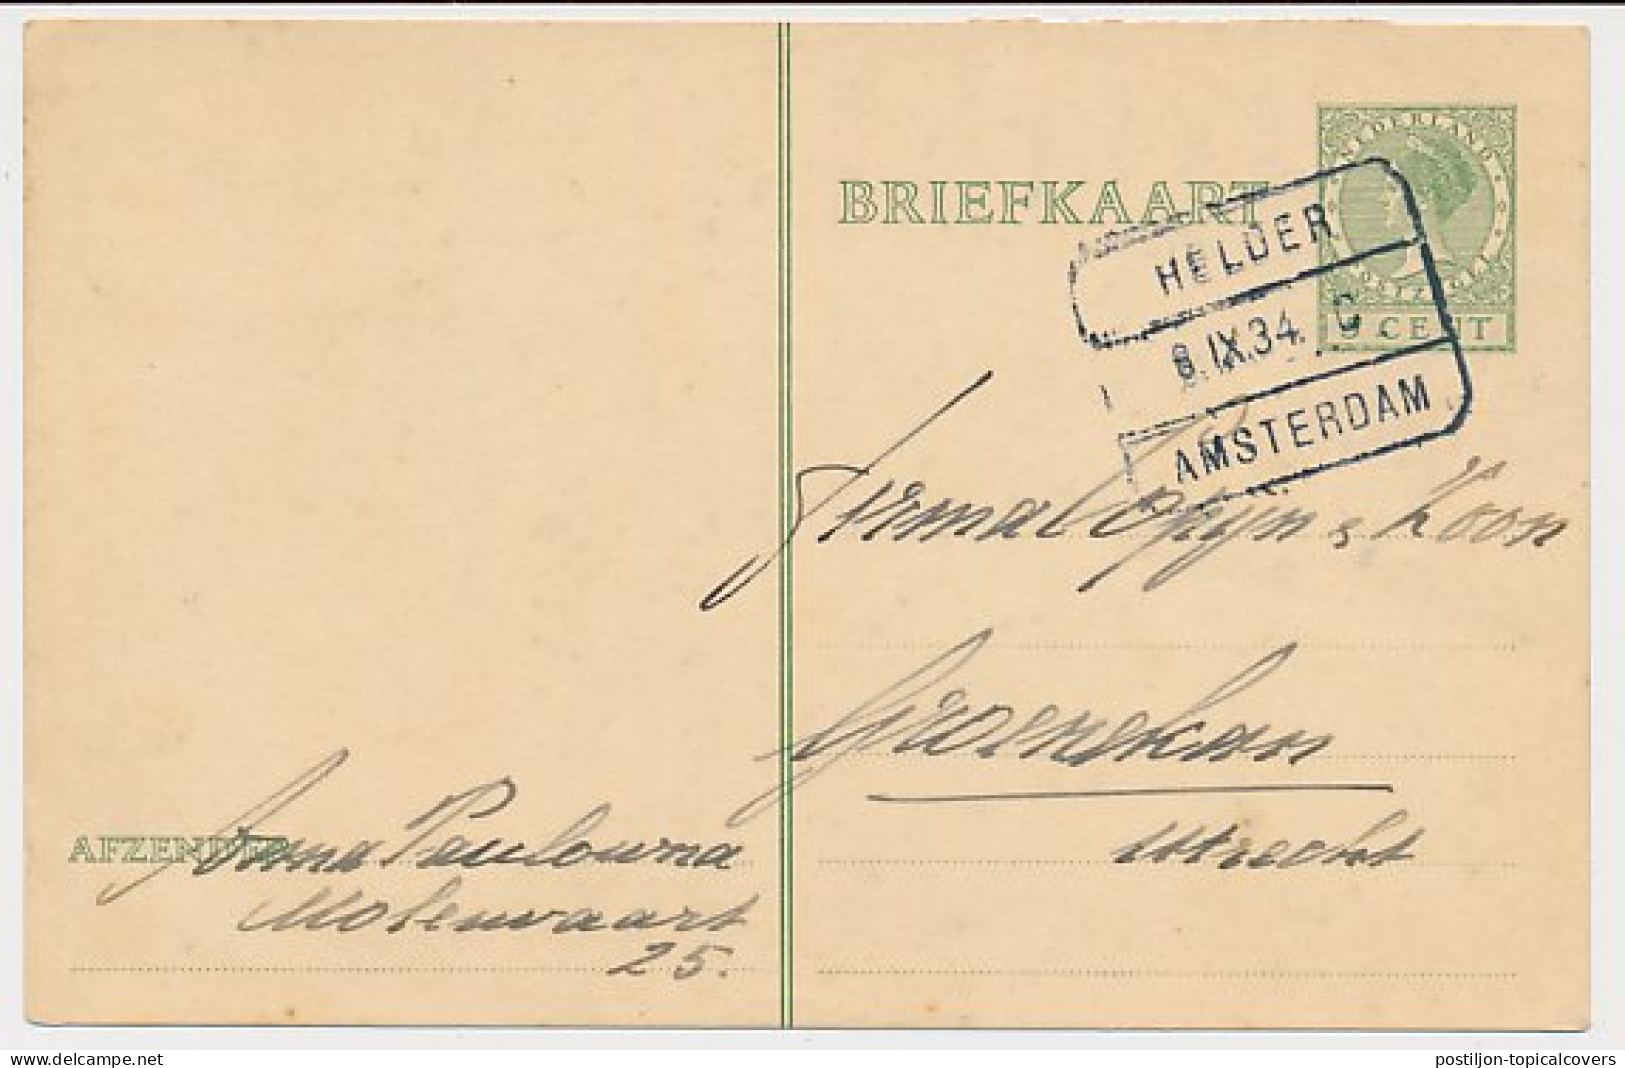 Treinblokstempel : Helder - Amsterdam C 1934 ( Anna Paulowna ) - Ohne Zuordnung